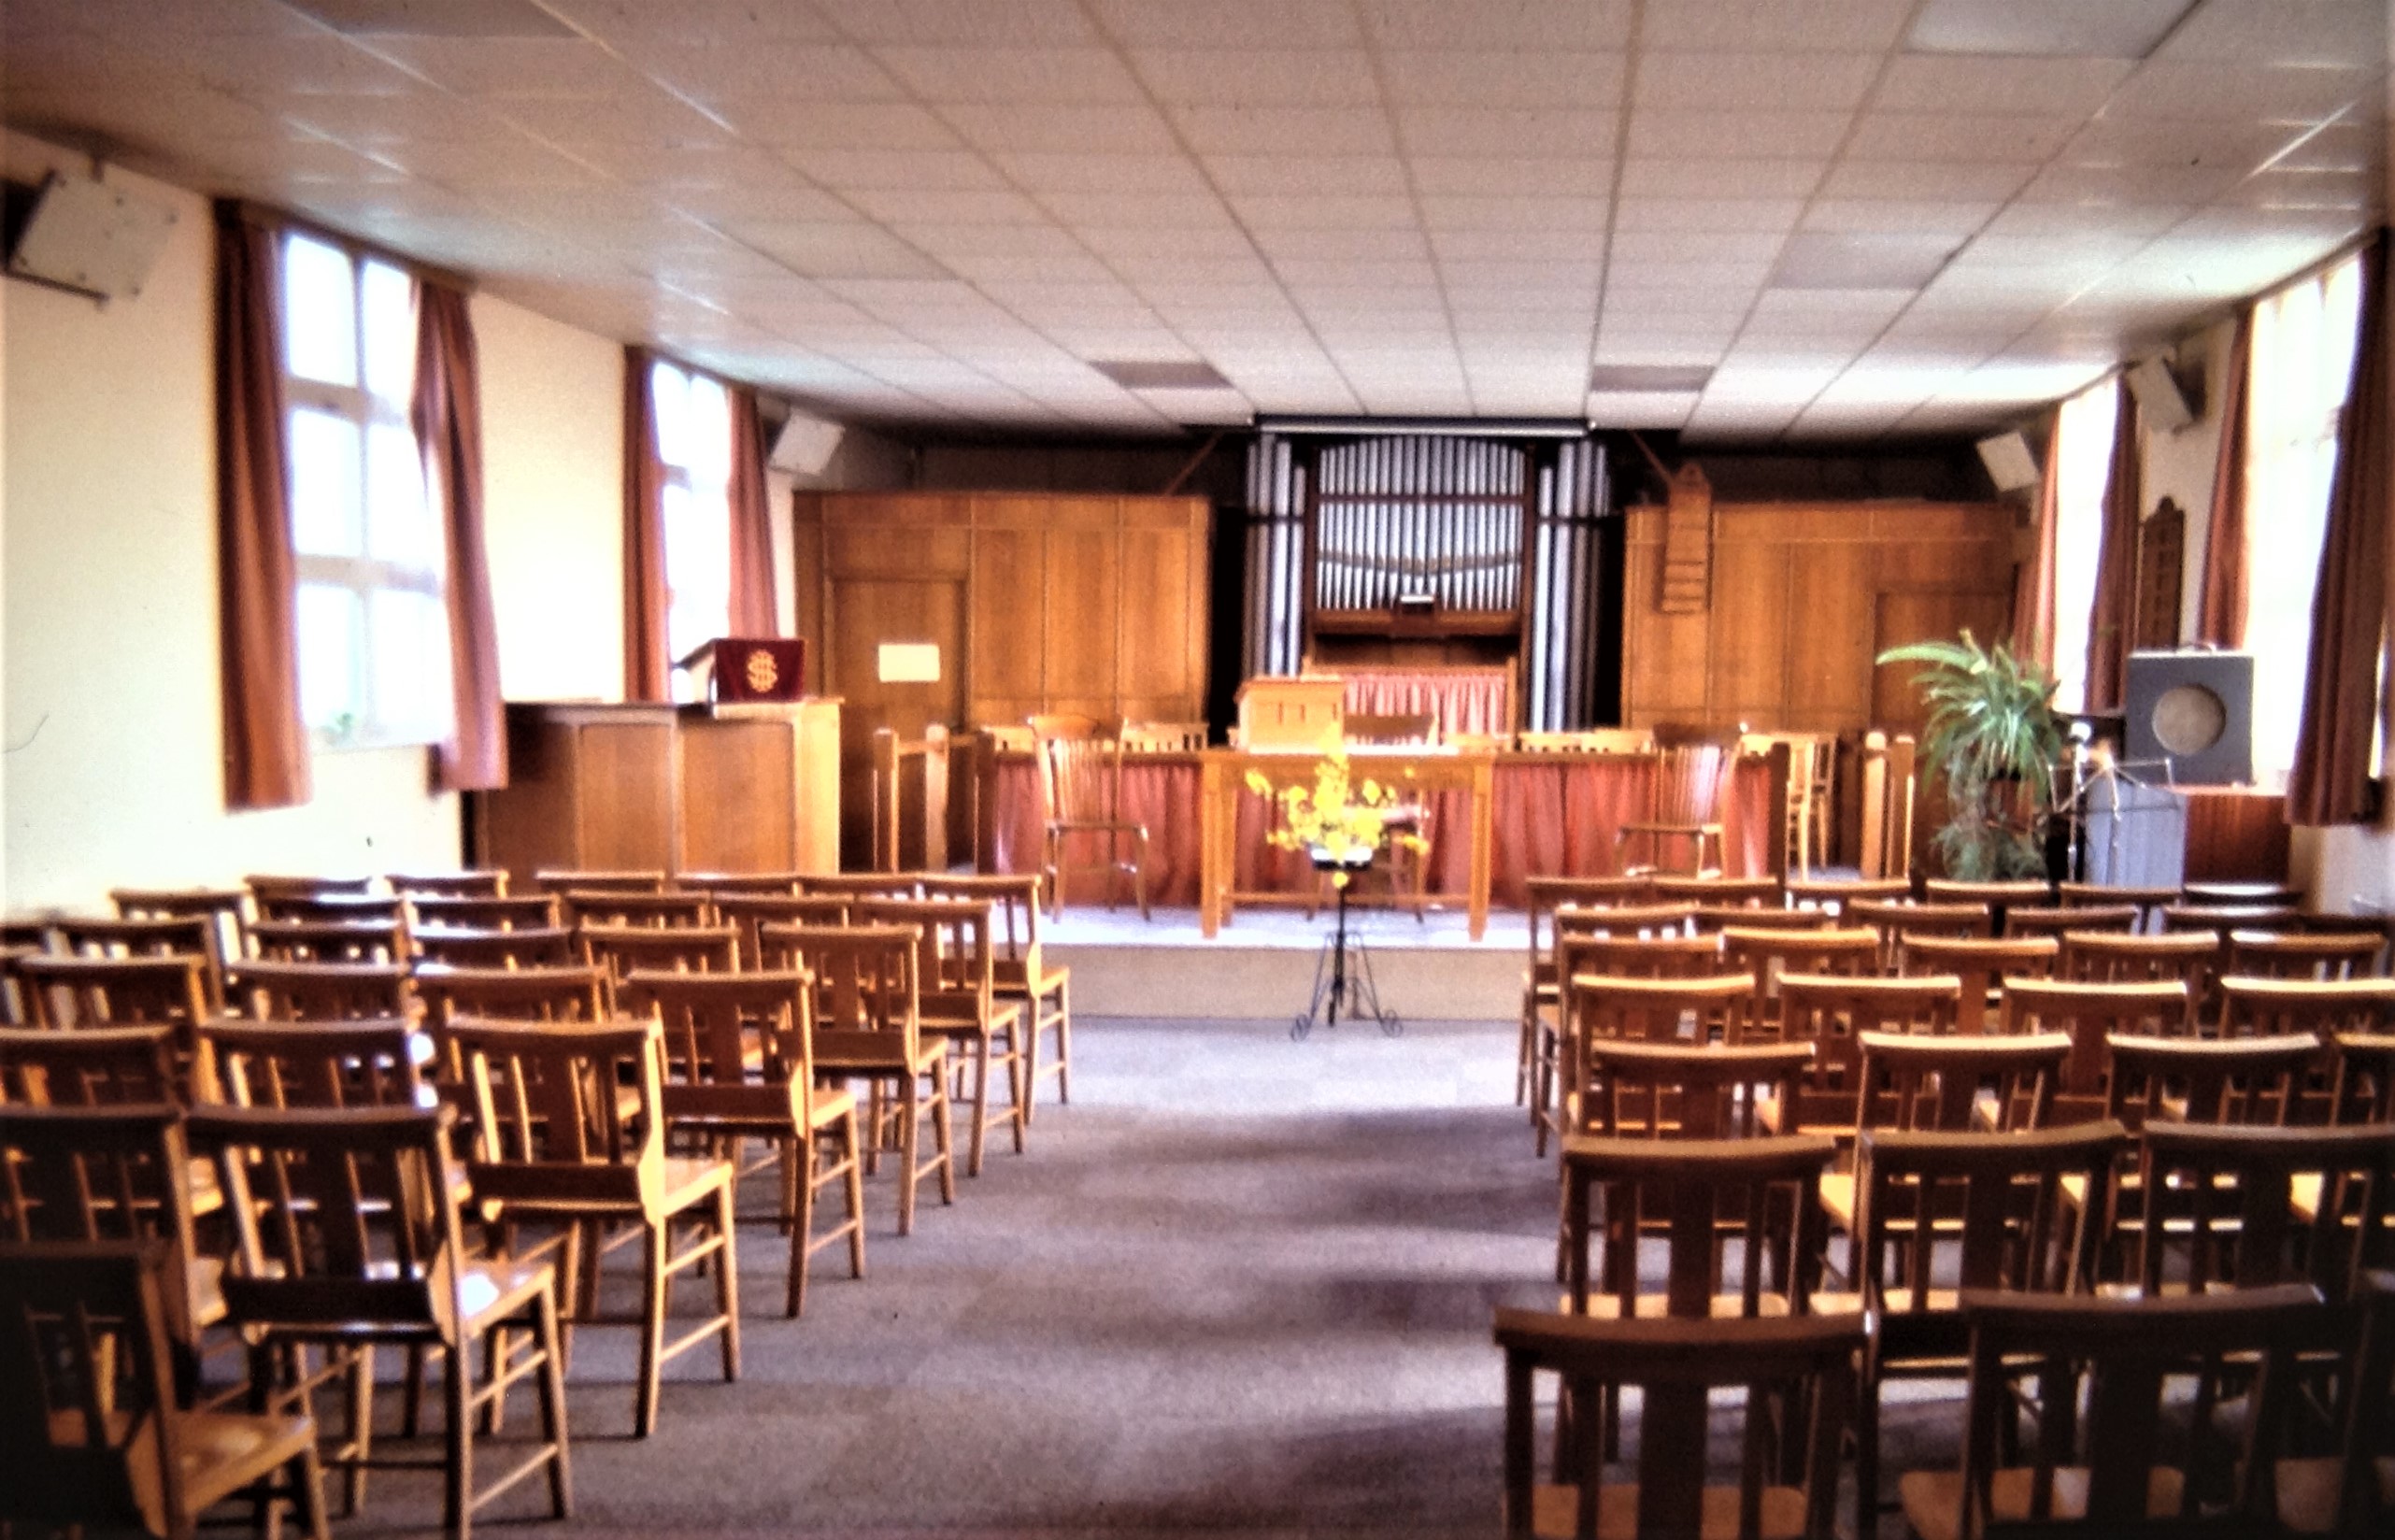 Church interior in the 1970s